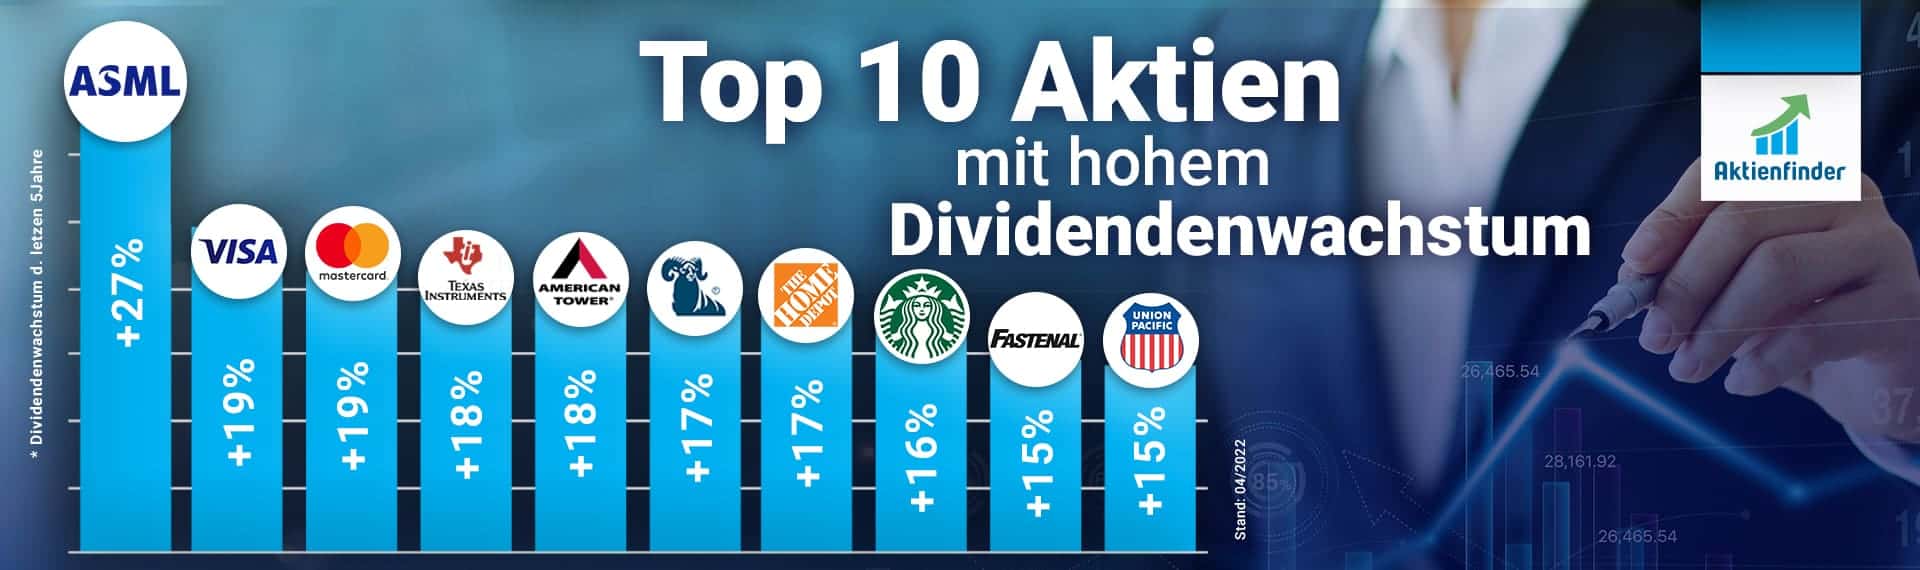 Top 10 Aktien mit hohem Dividendenwachstum